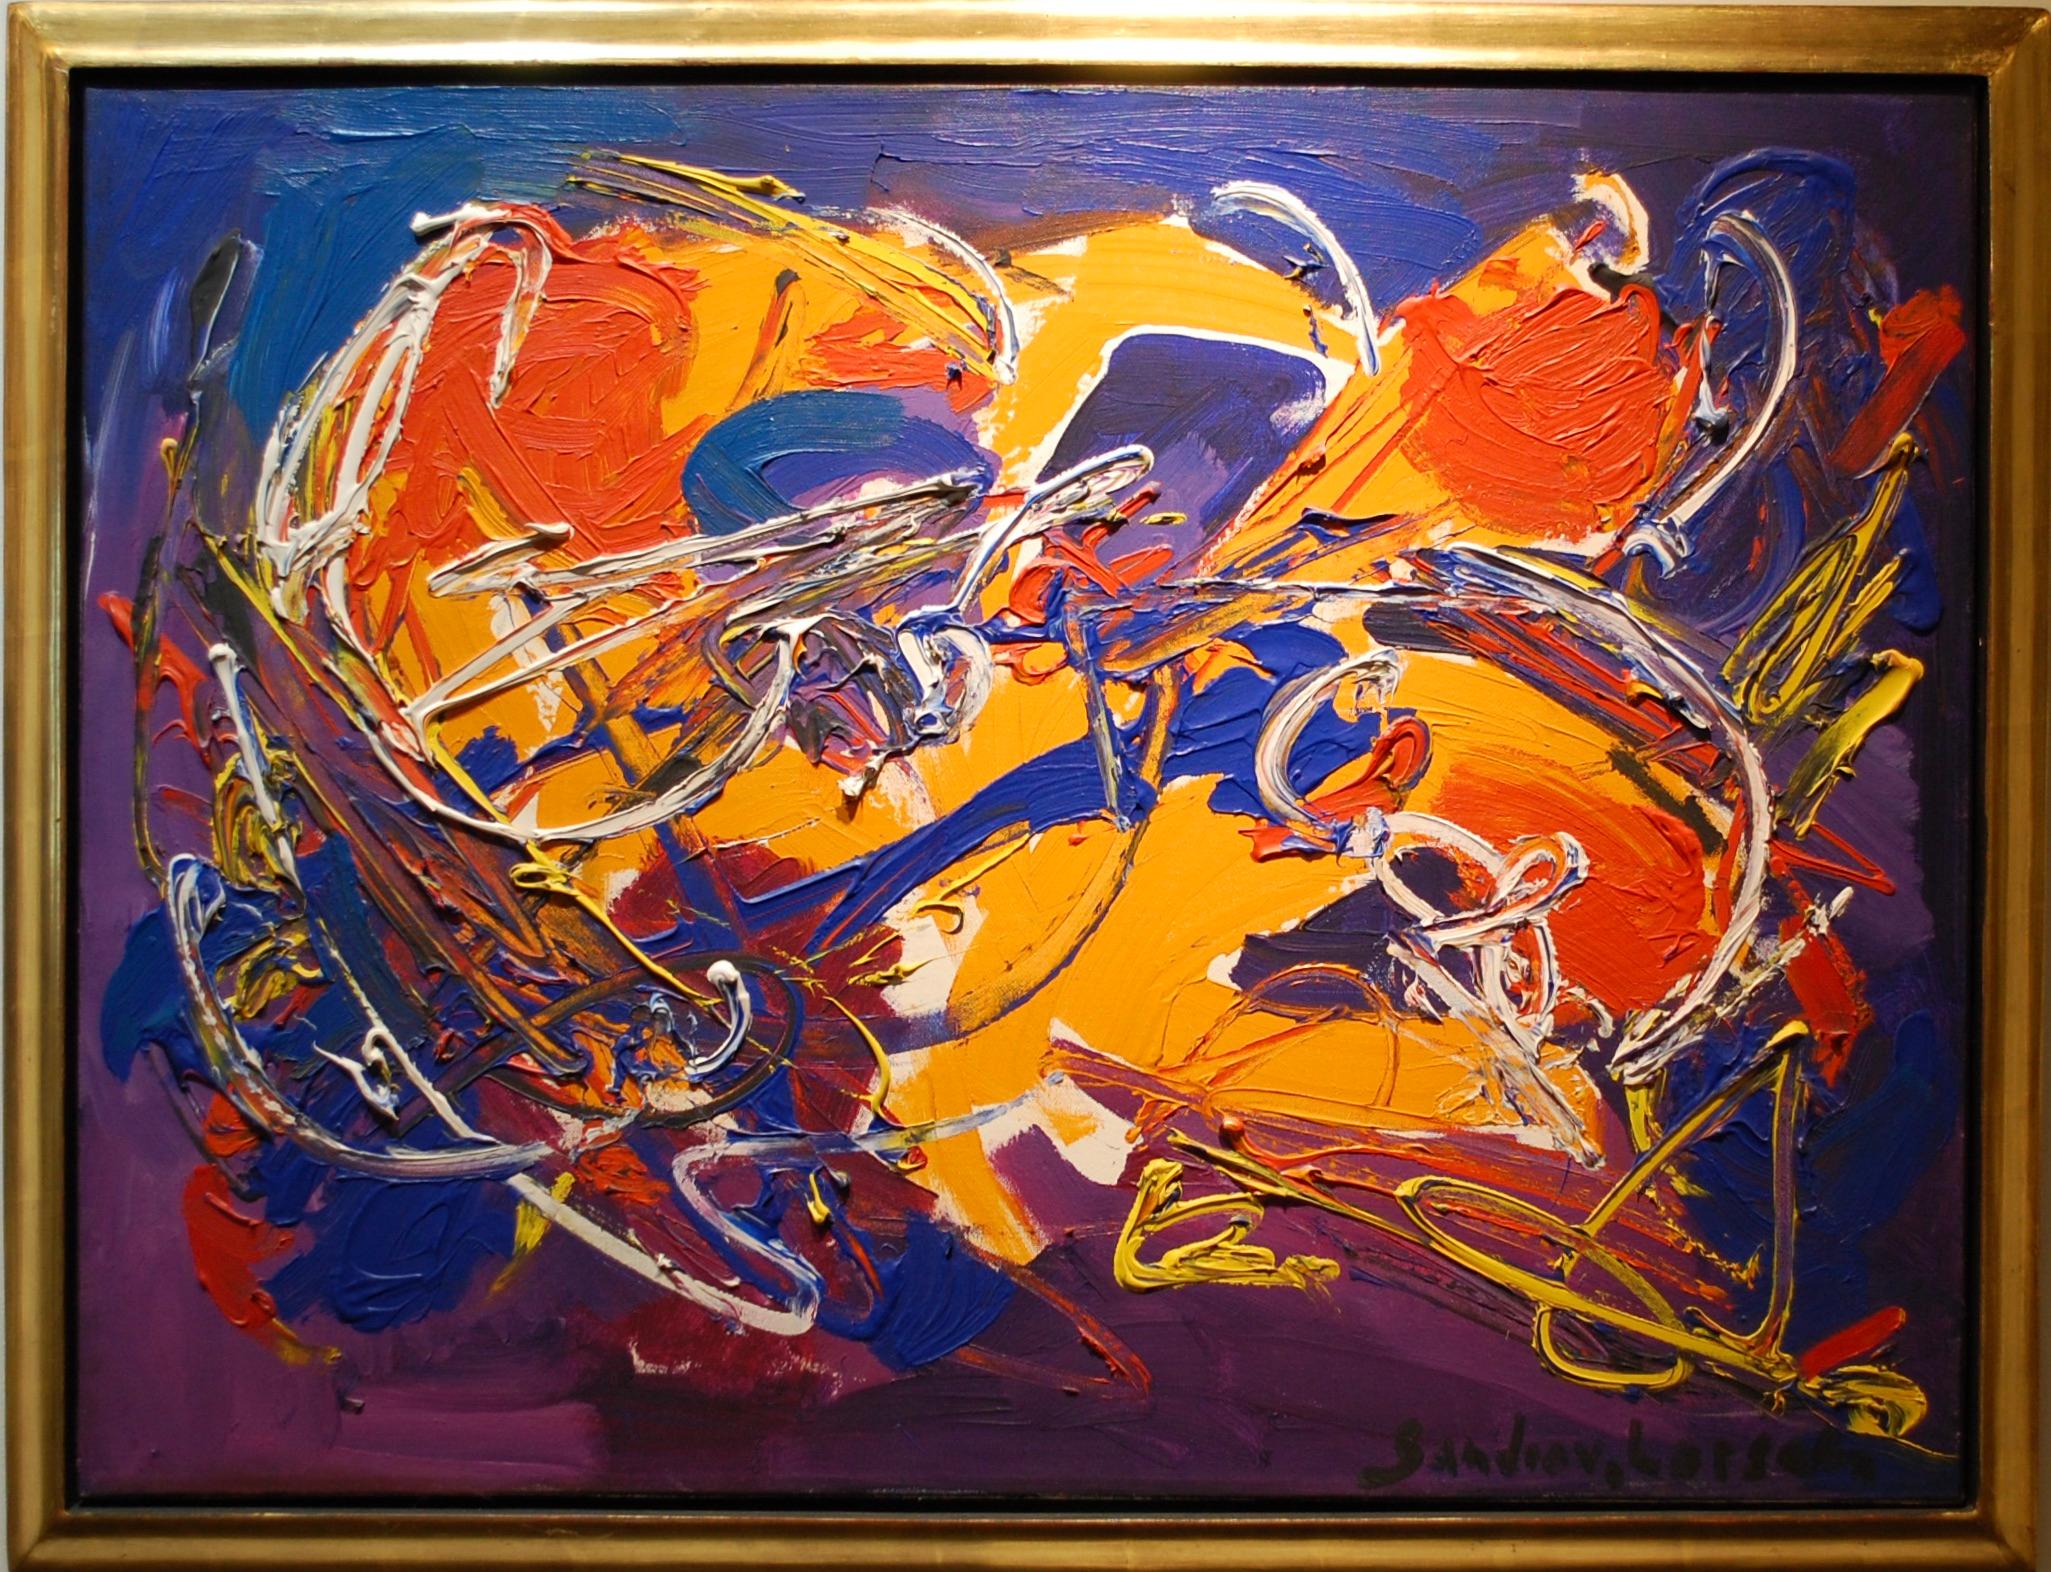  Expressionistische abstrakte Komposition mit orangen und blauen Farben 
Leinwandgröße 24 